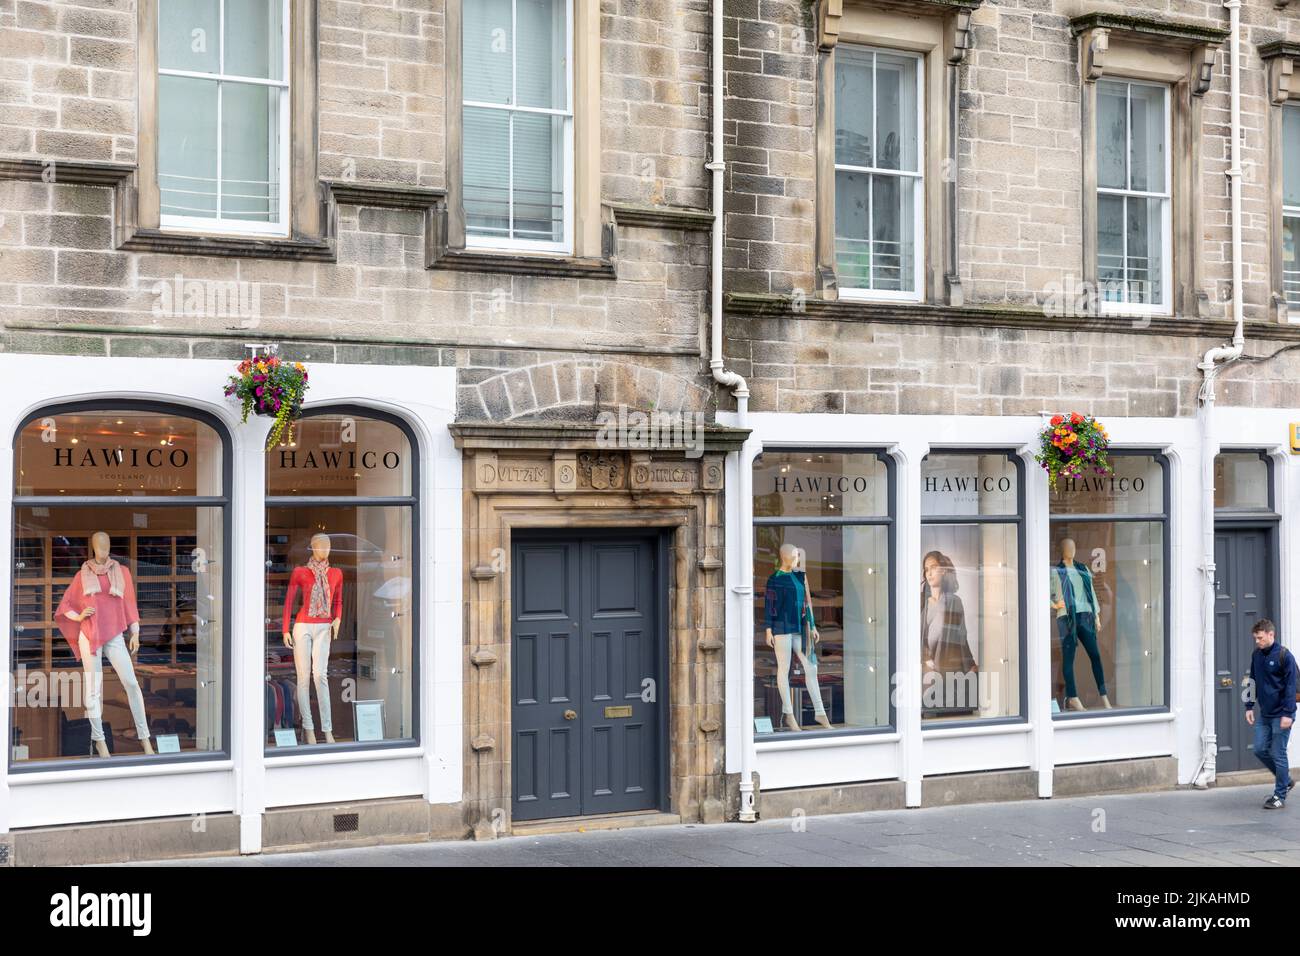 Hawico negozio di abbigliamento uomo e donna che vende abbigliamento  scozzese, Grassmarket, centro storico di Edimburgo, Scozia, Regno Unito  Foto stock - Alamy